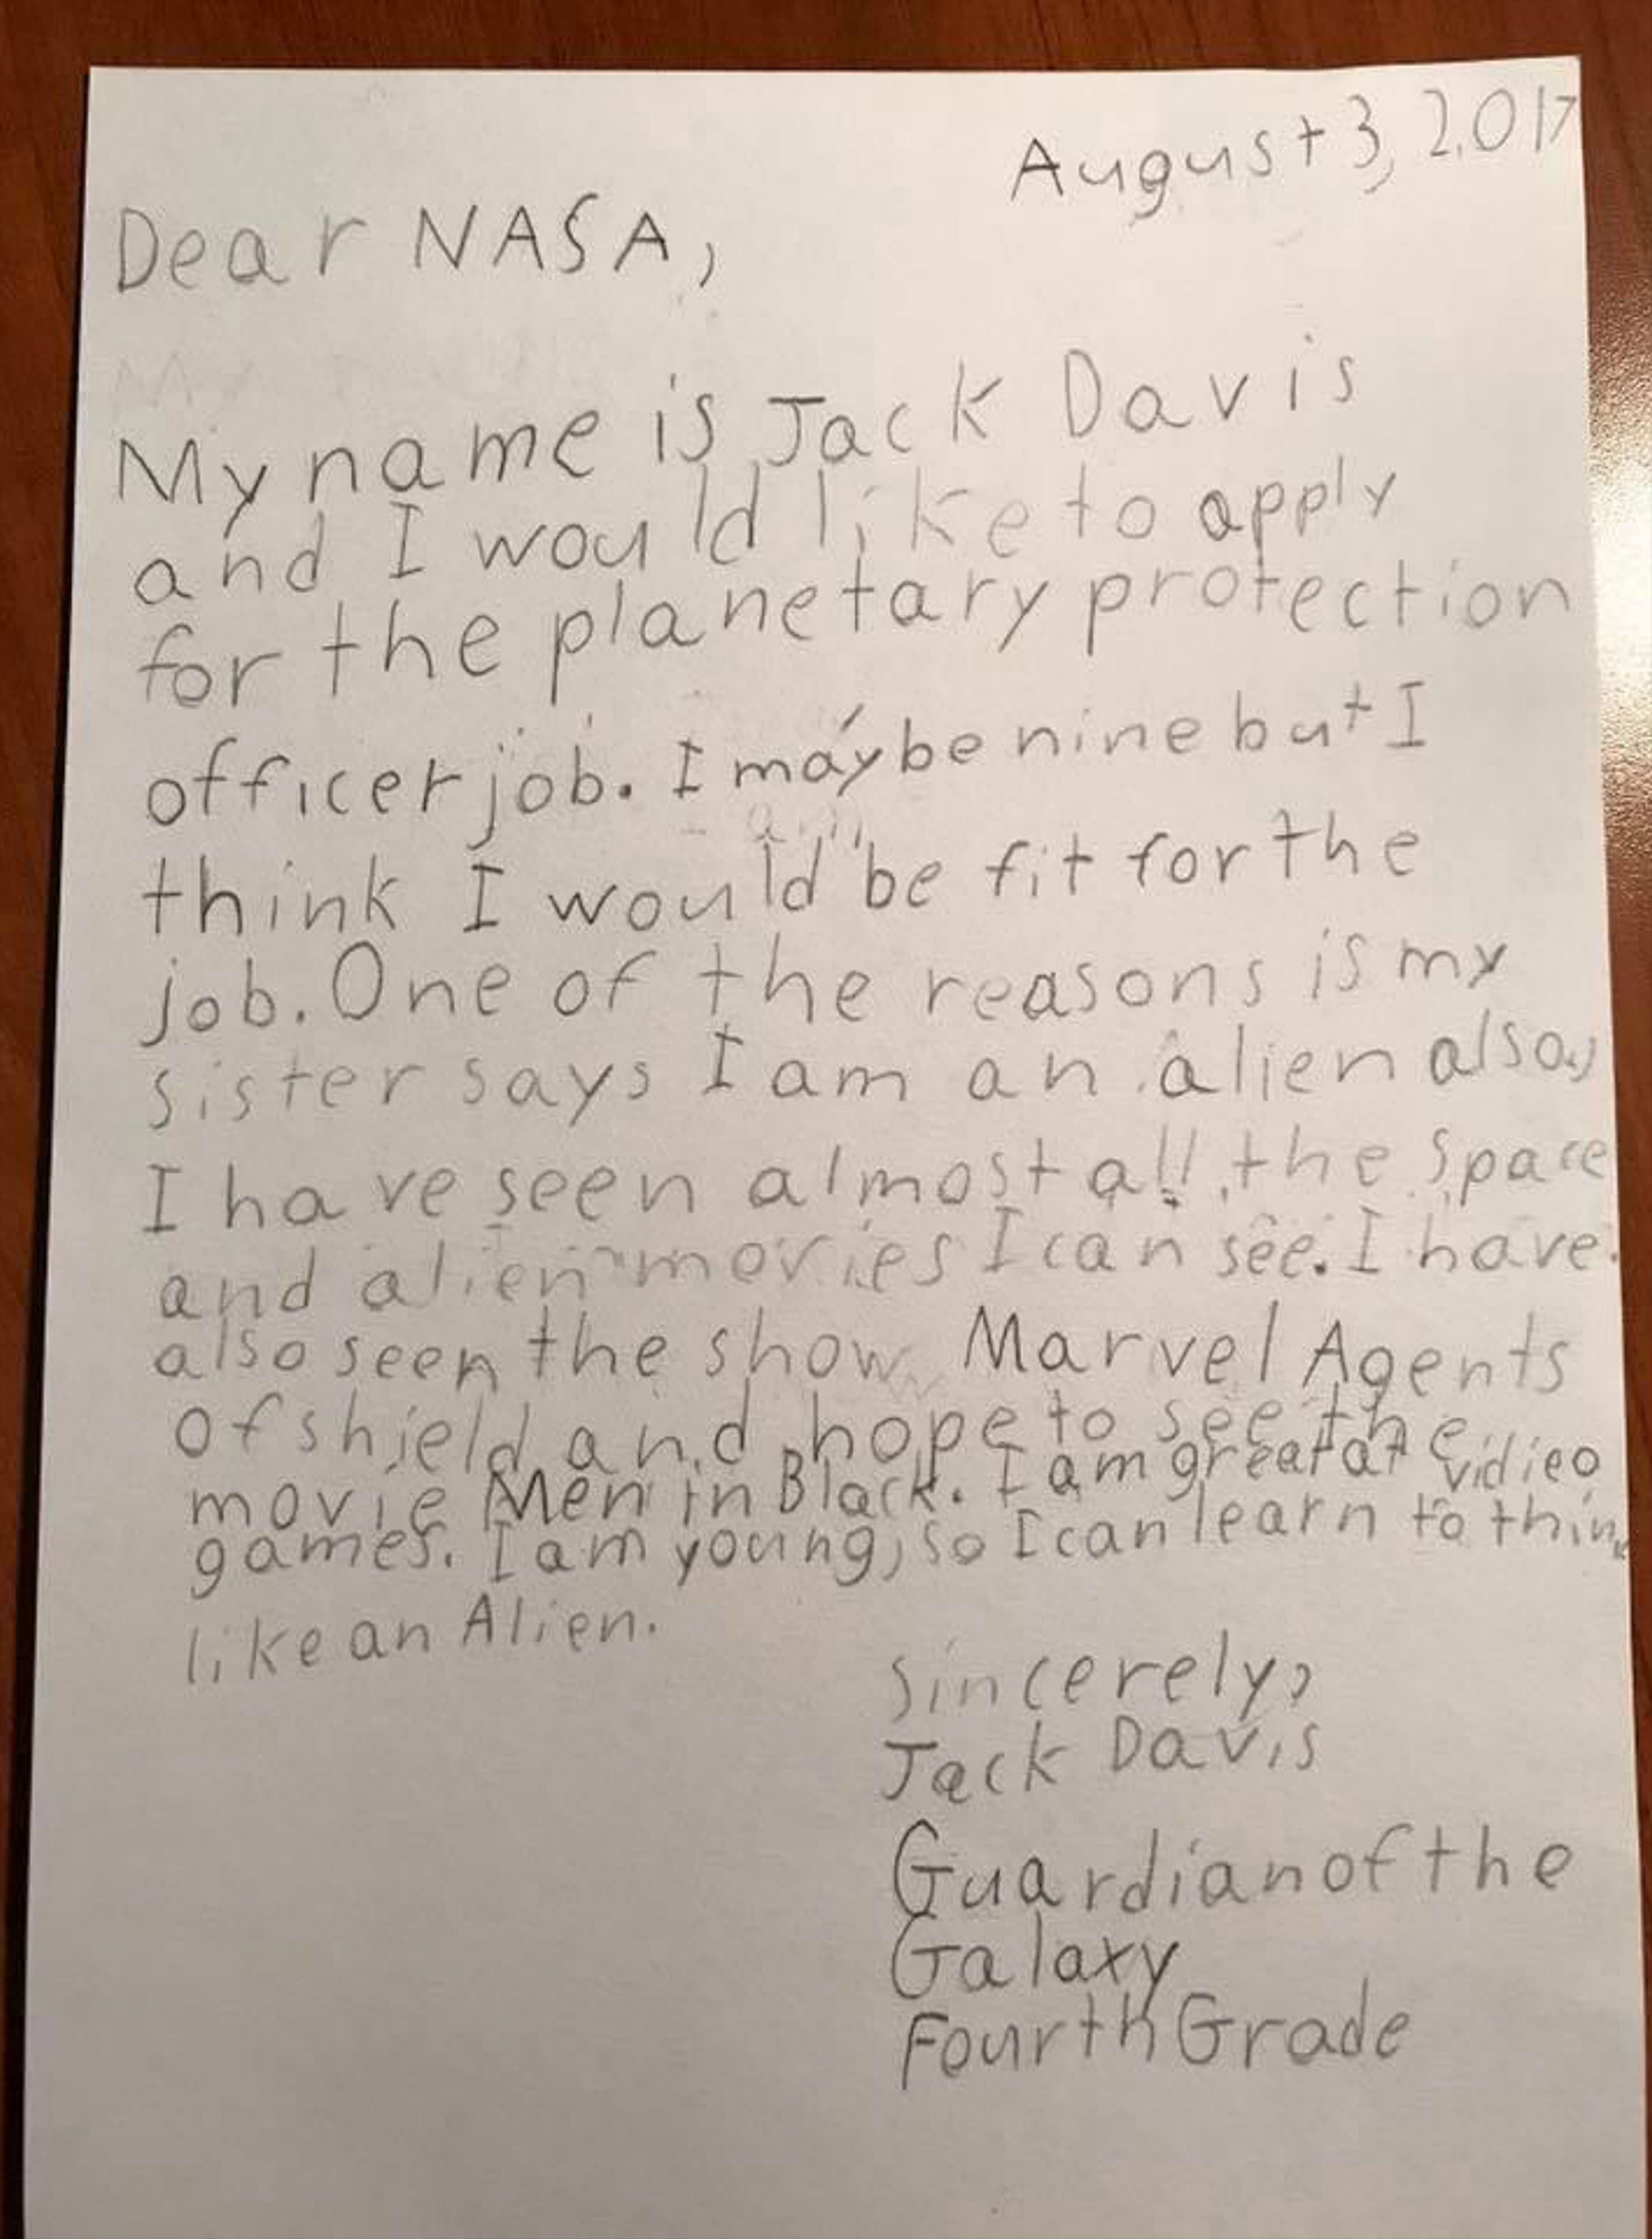 Un niño solicita trabajo en la NASA y esta es la respuesta